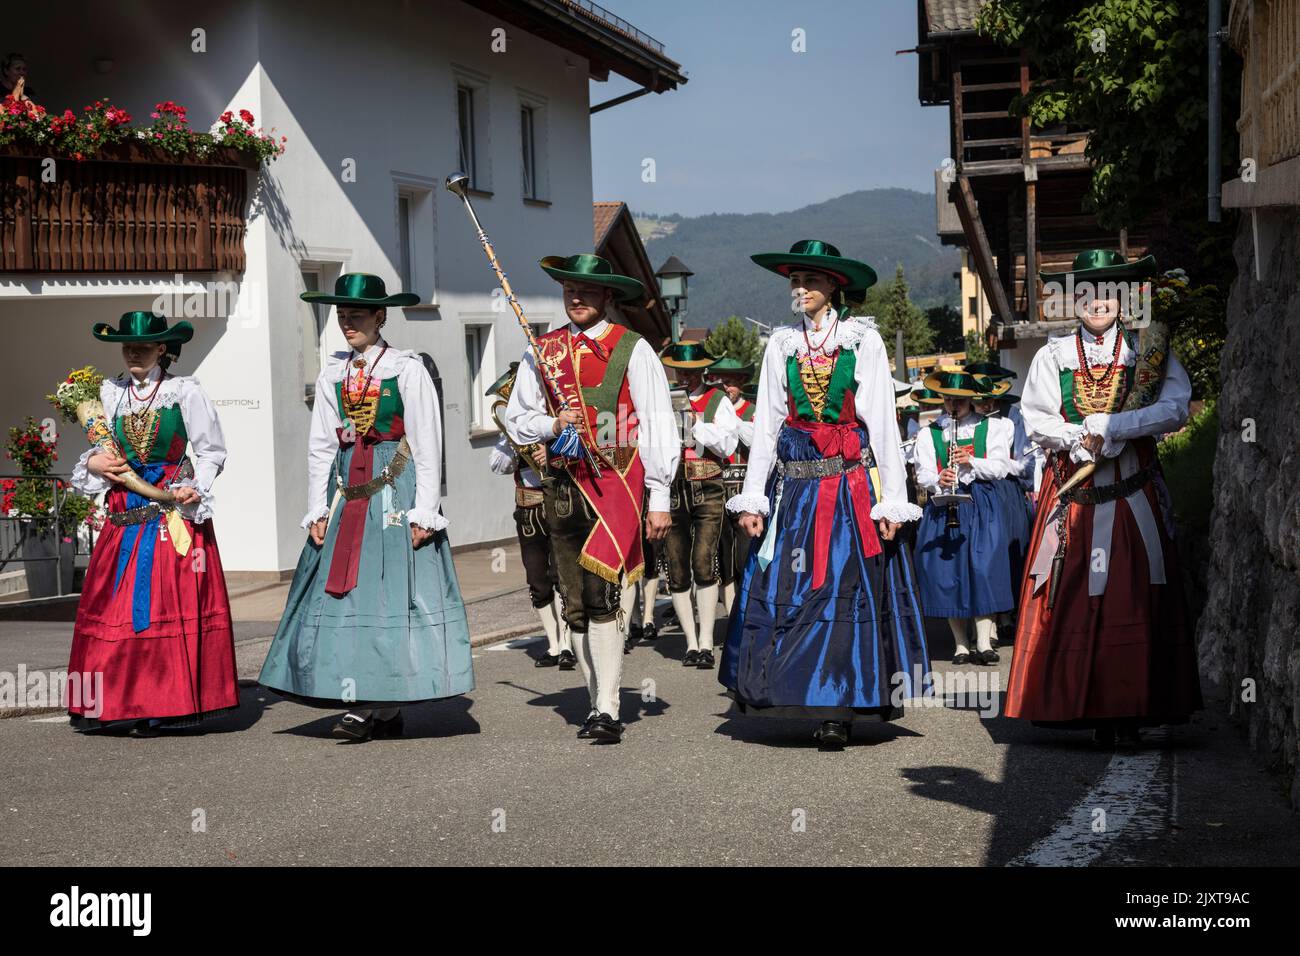 Los hombres y mujeres que visten el traje tradicional de la época local con sombreros de ala ancha y calzones de cuero o faldas largas participan en un churc de 'Corpus Christi' Foto de stock